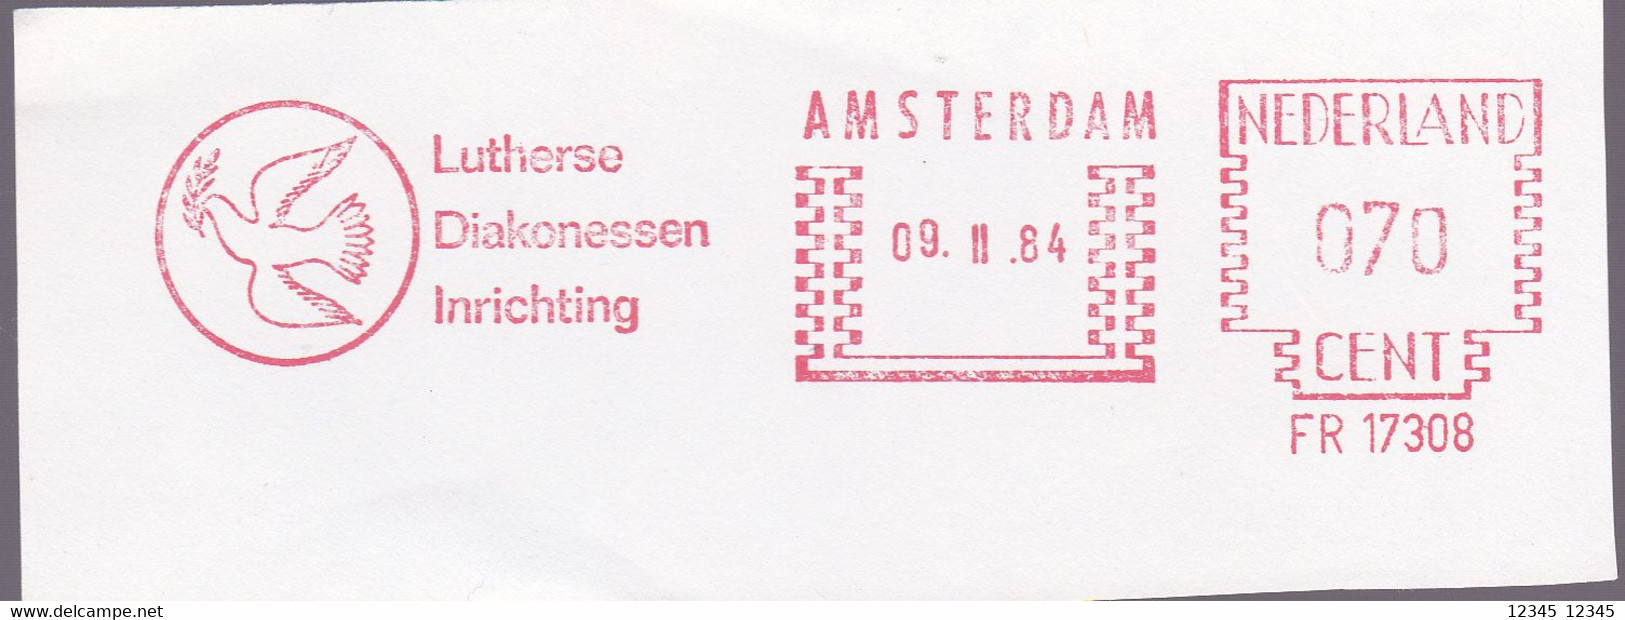 Amsterdam 1984, Lutherse Diakonessen Inrichting, Birds - Franking Machines (EMA)